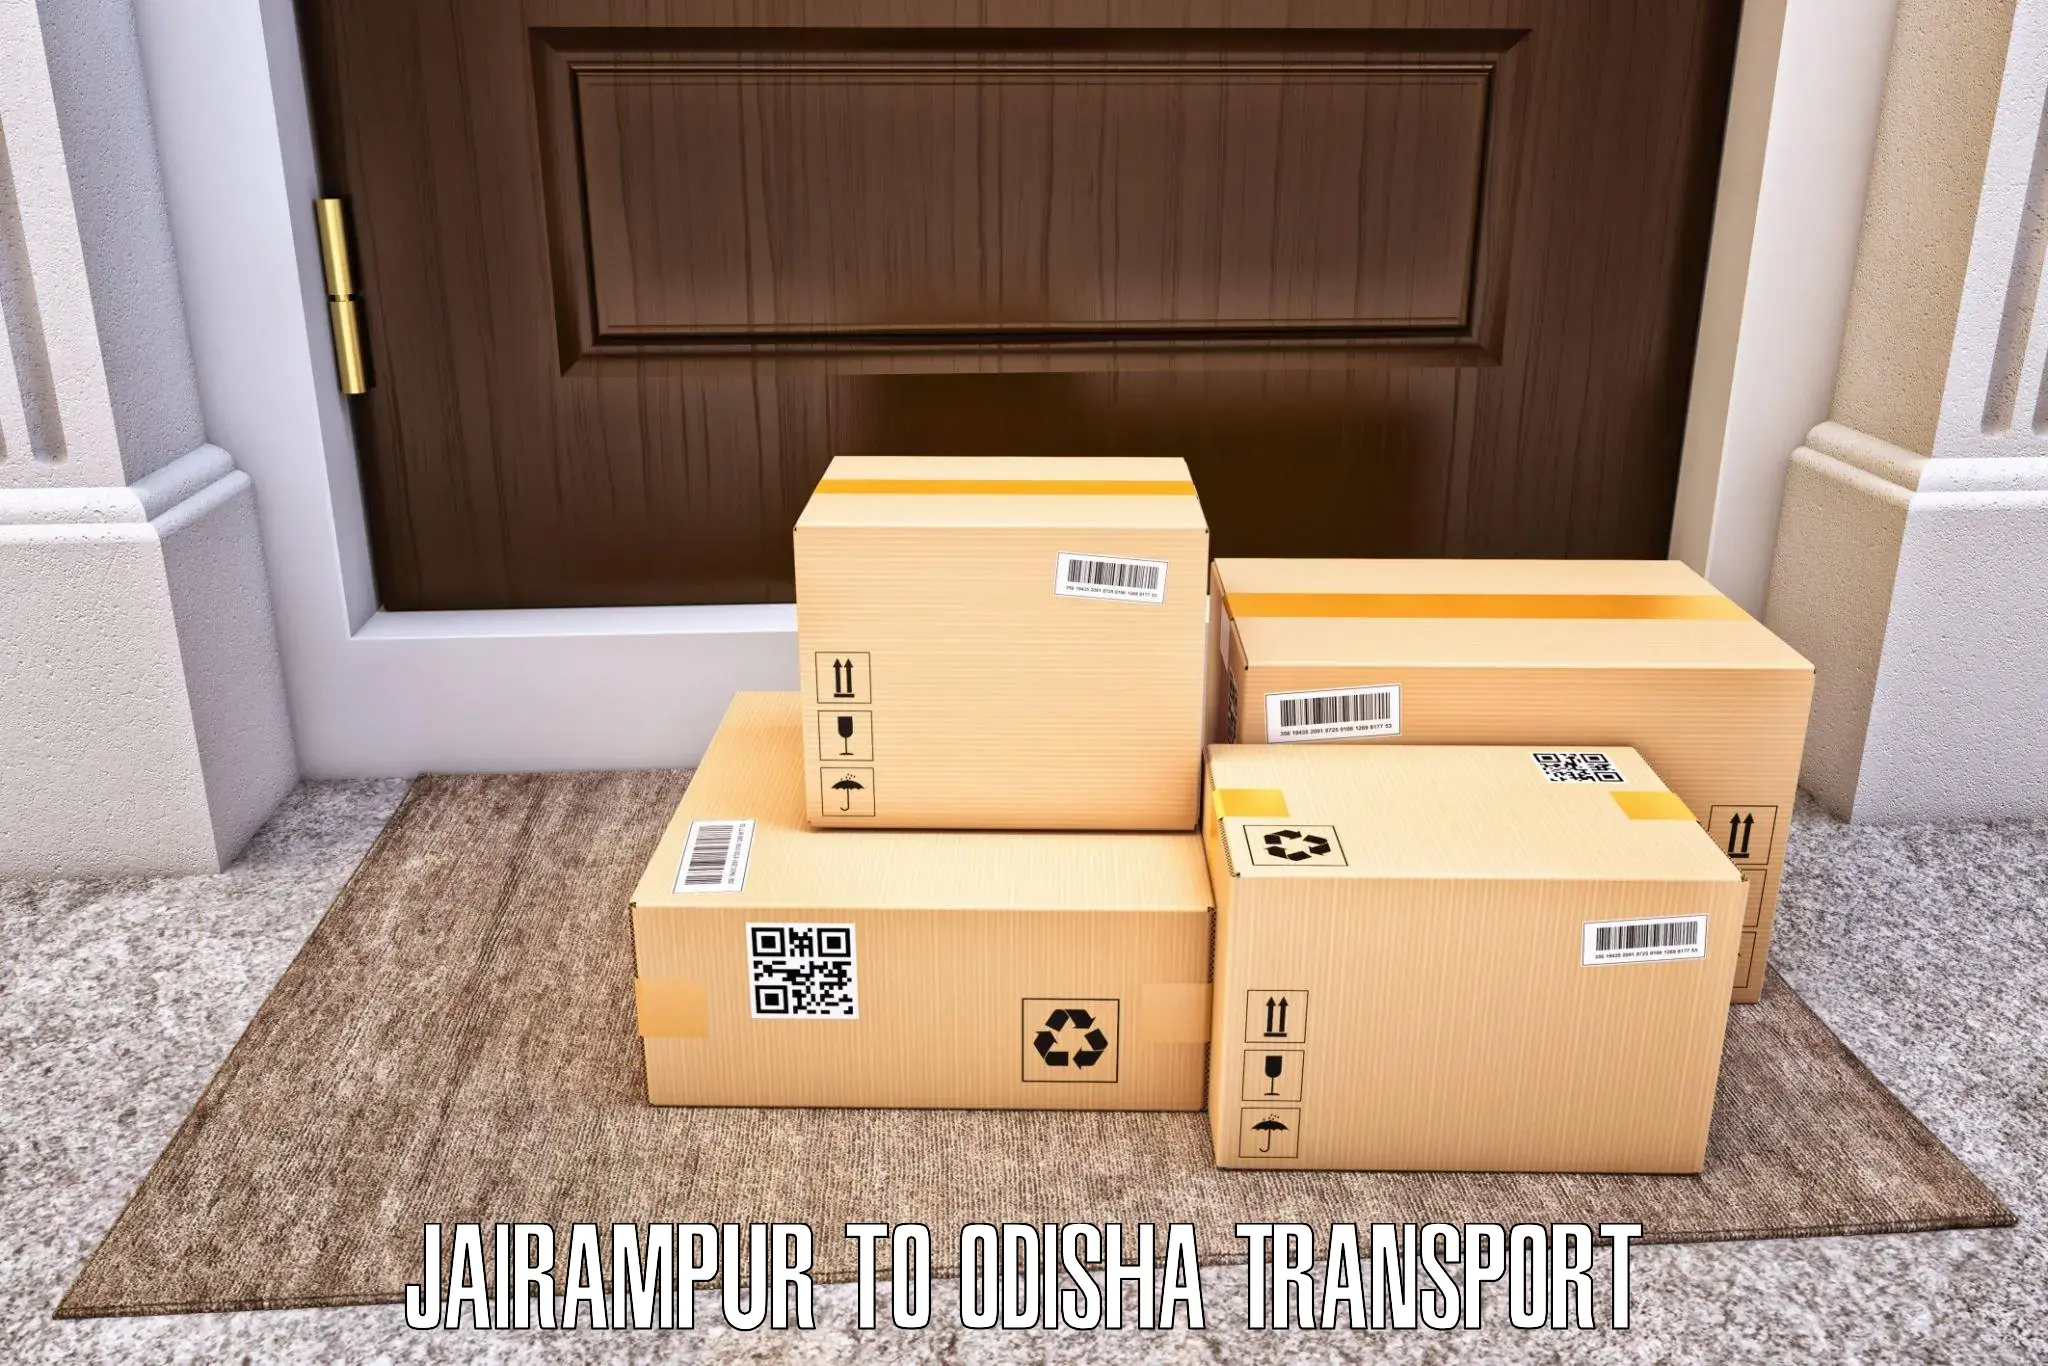 Container transport service Jairampur to Pottangi